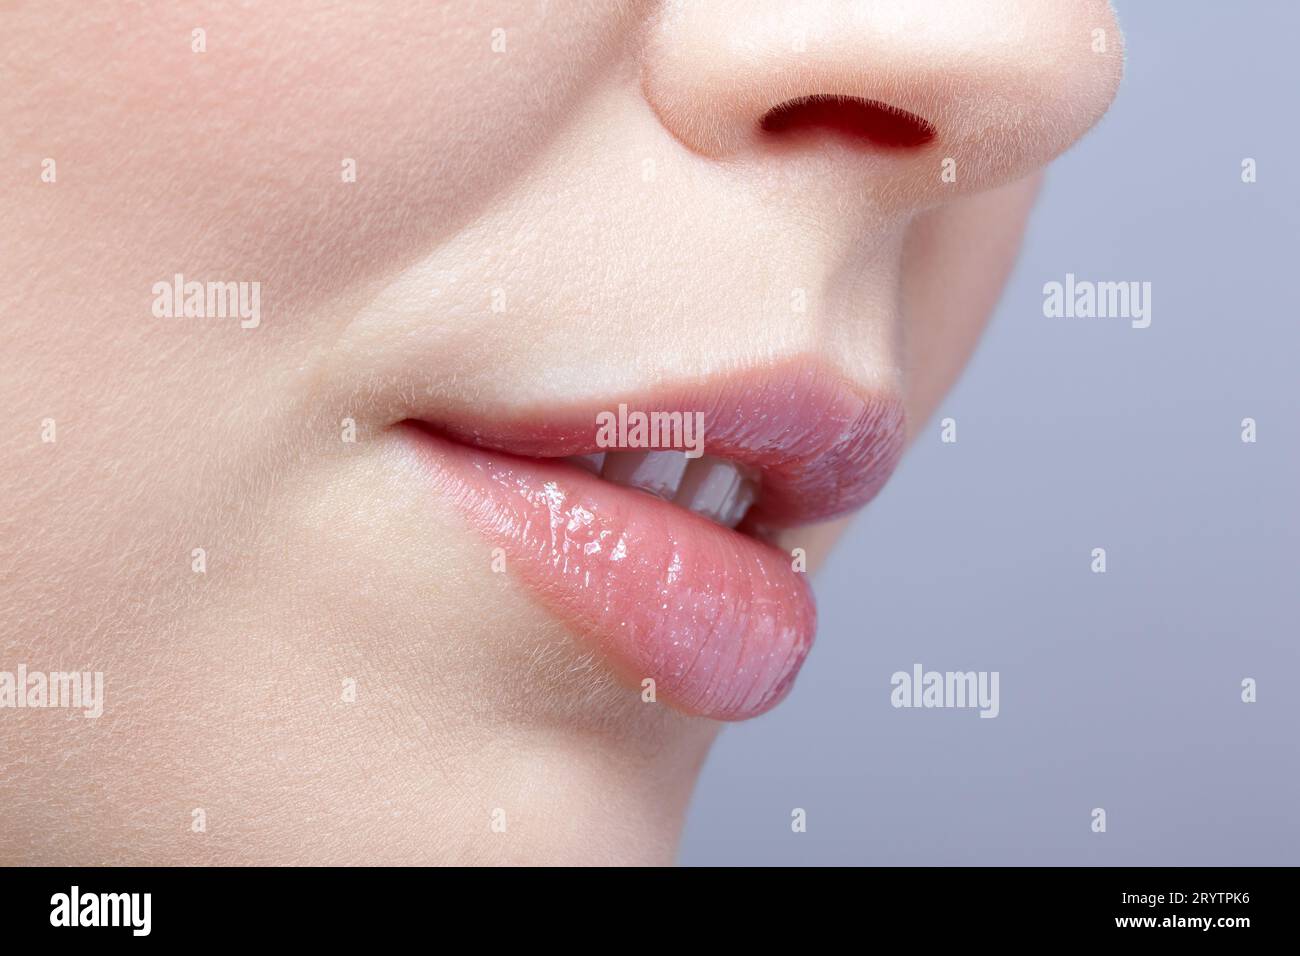 Human bocca e naso. Macro Closeup ritratto della parte femmina del viso. Donna labbra con il giorno la bellezza del trucco. Foto Stock